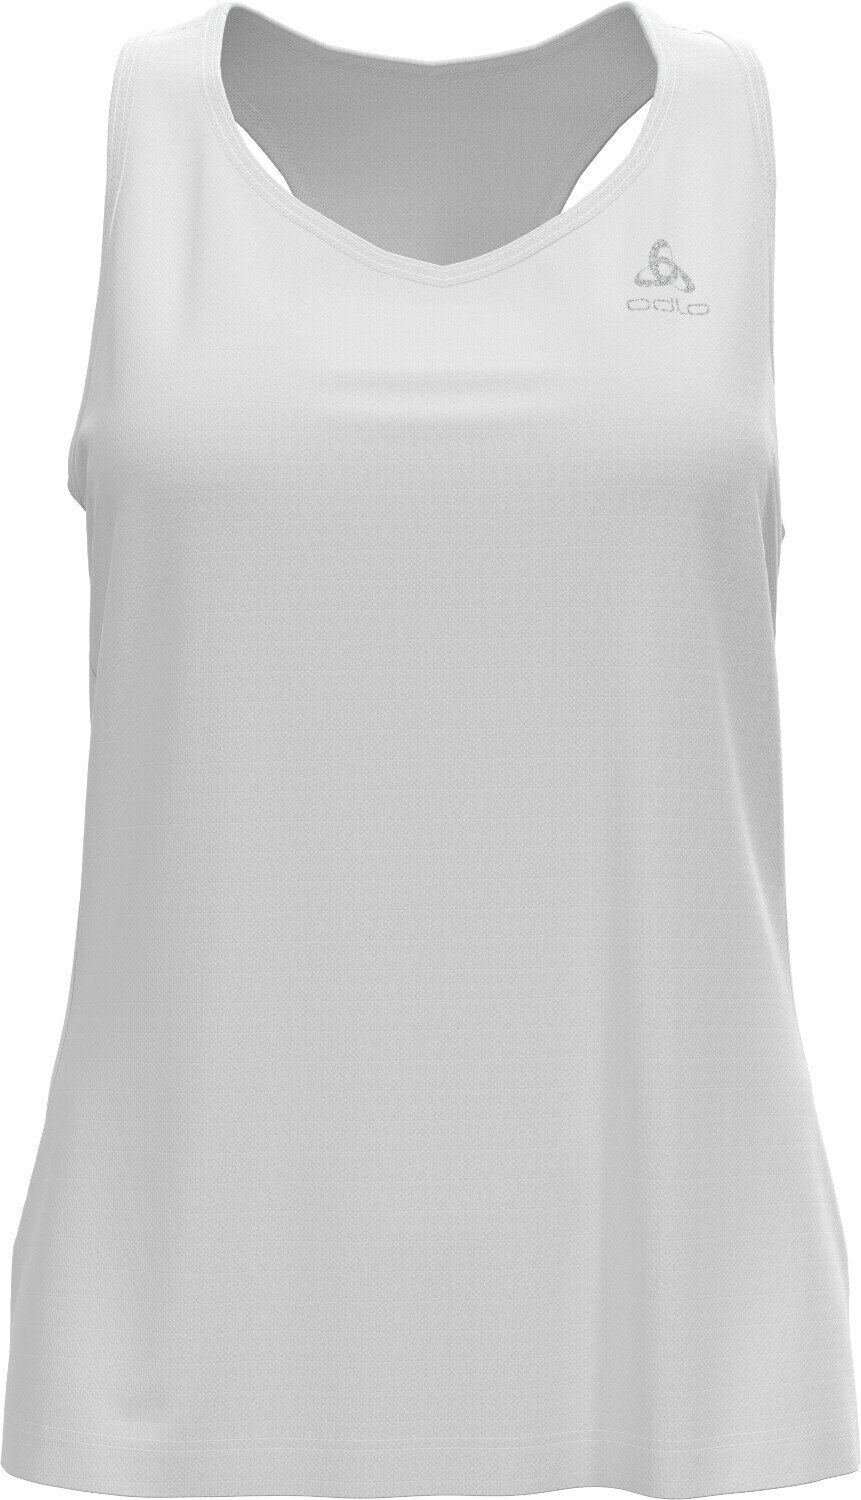 Bluze fără mâneci pentru alergare
 Odlo Essential Base Layer Singlet White S Bluze fără mâneci pentru alergare